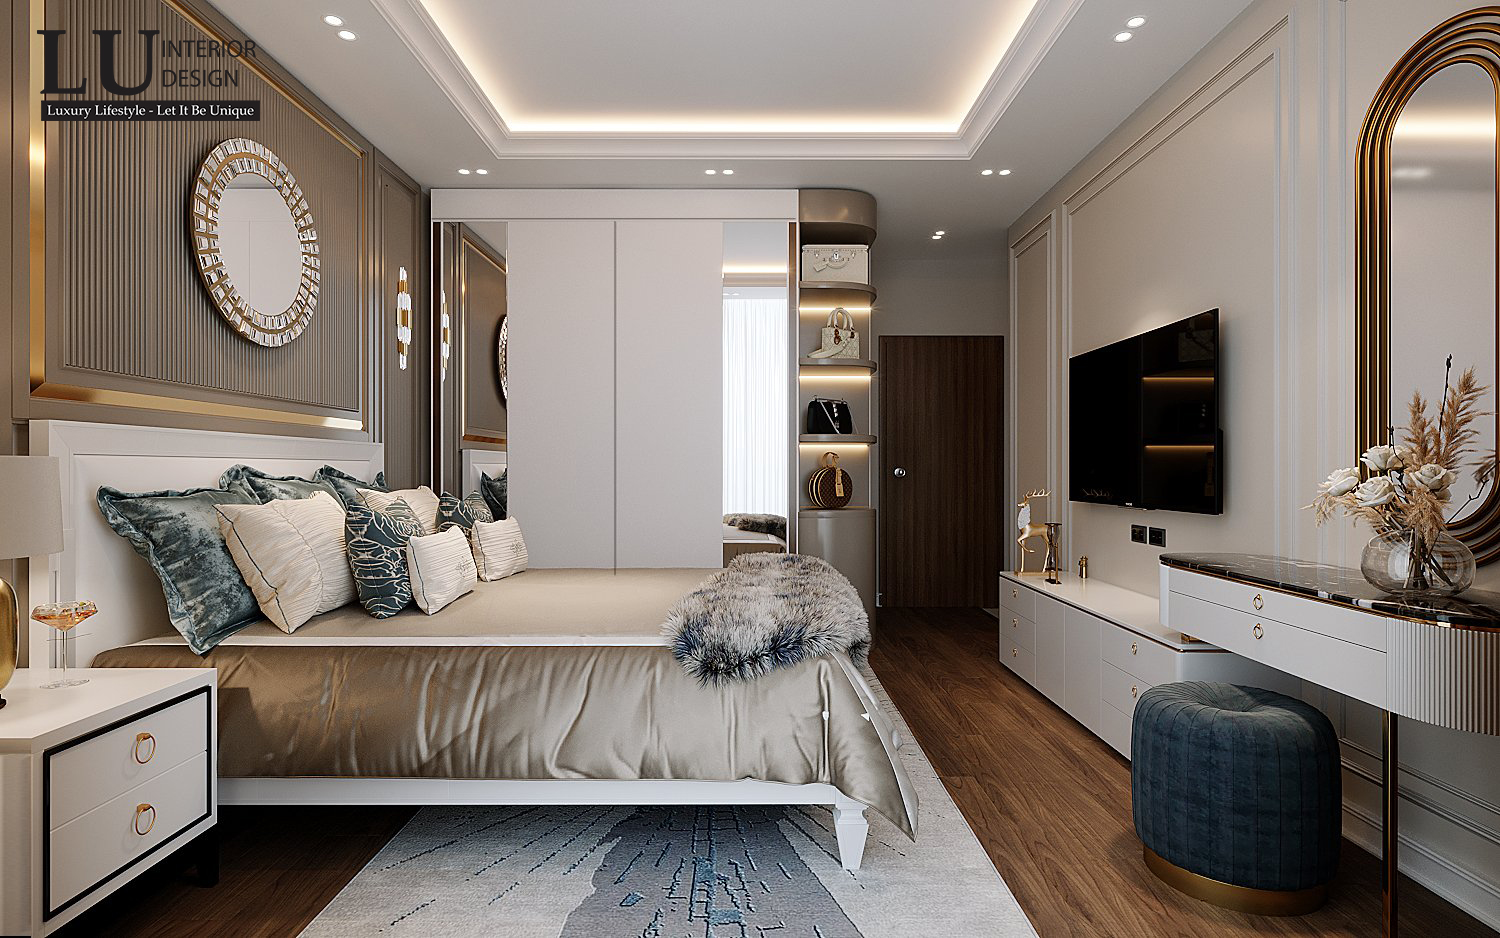 Thiết kế phòng ngủ master hiện đại hướng đến sự sang trọng, tiện nghi và đẳng cấp - Thiết kế căn hộ Saigon Royal bởi LU Design.